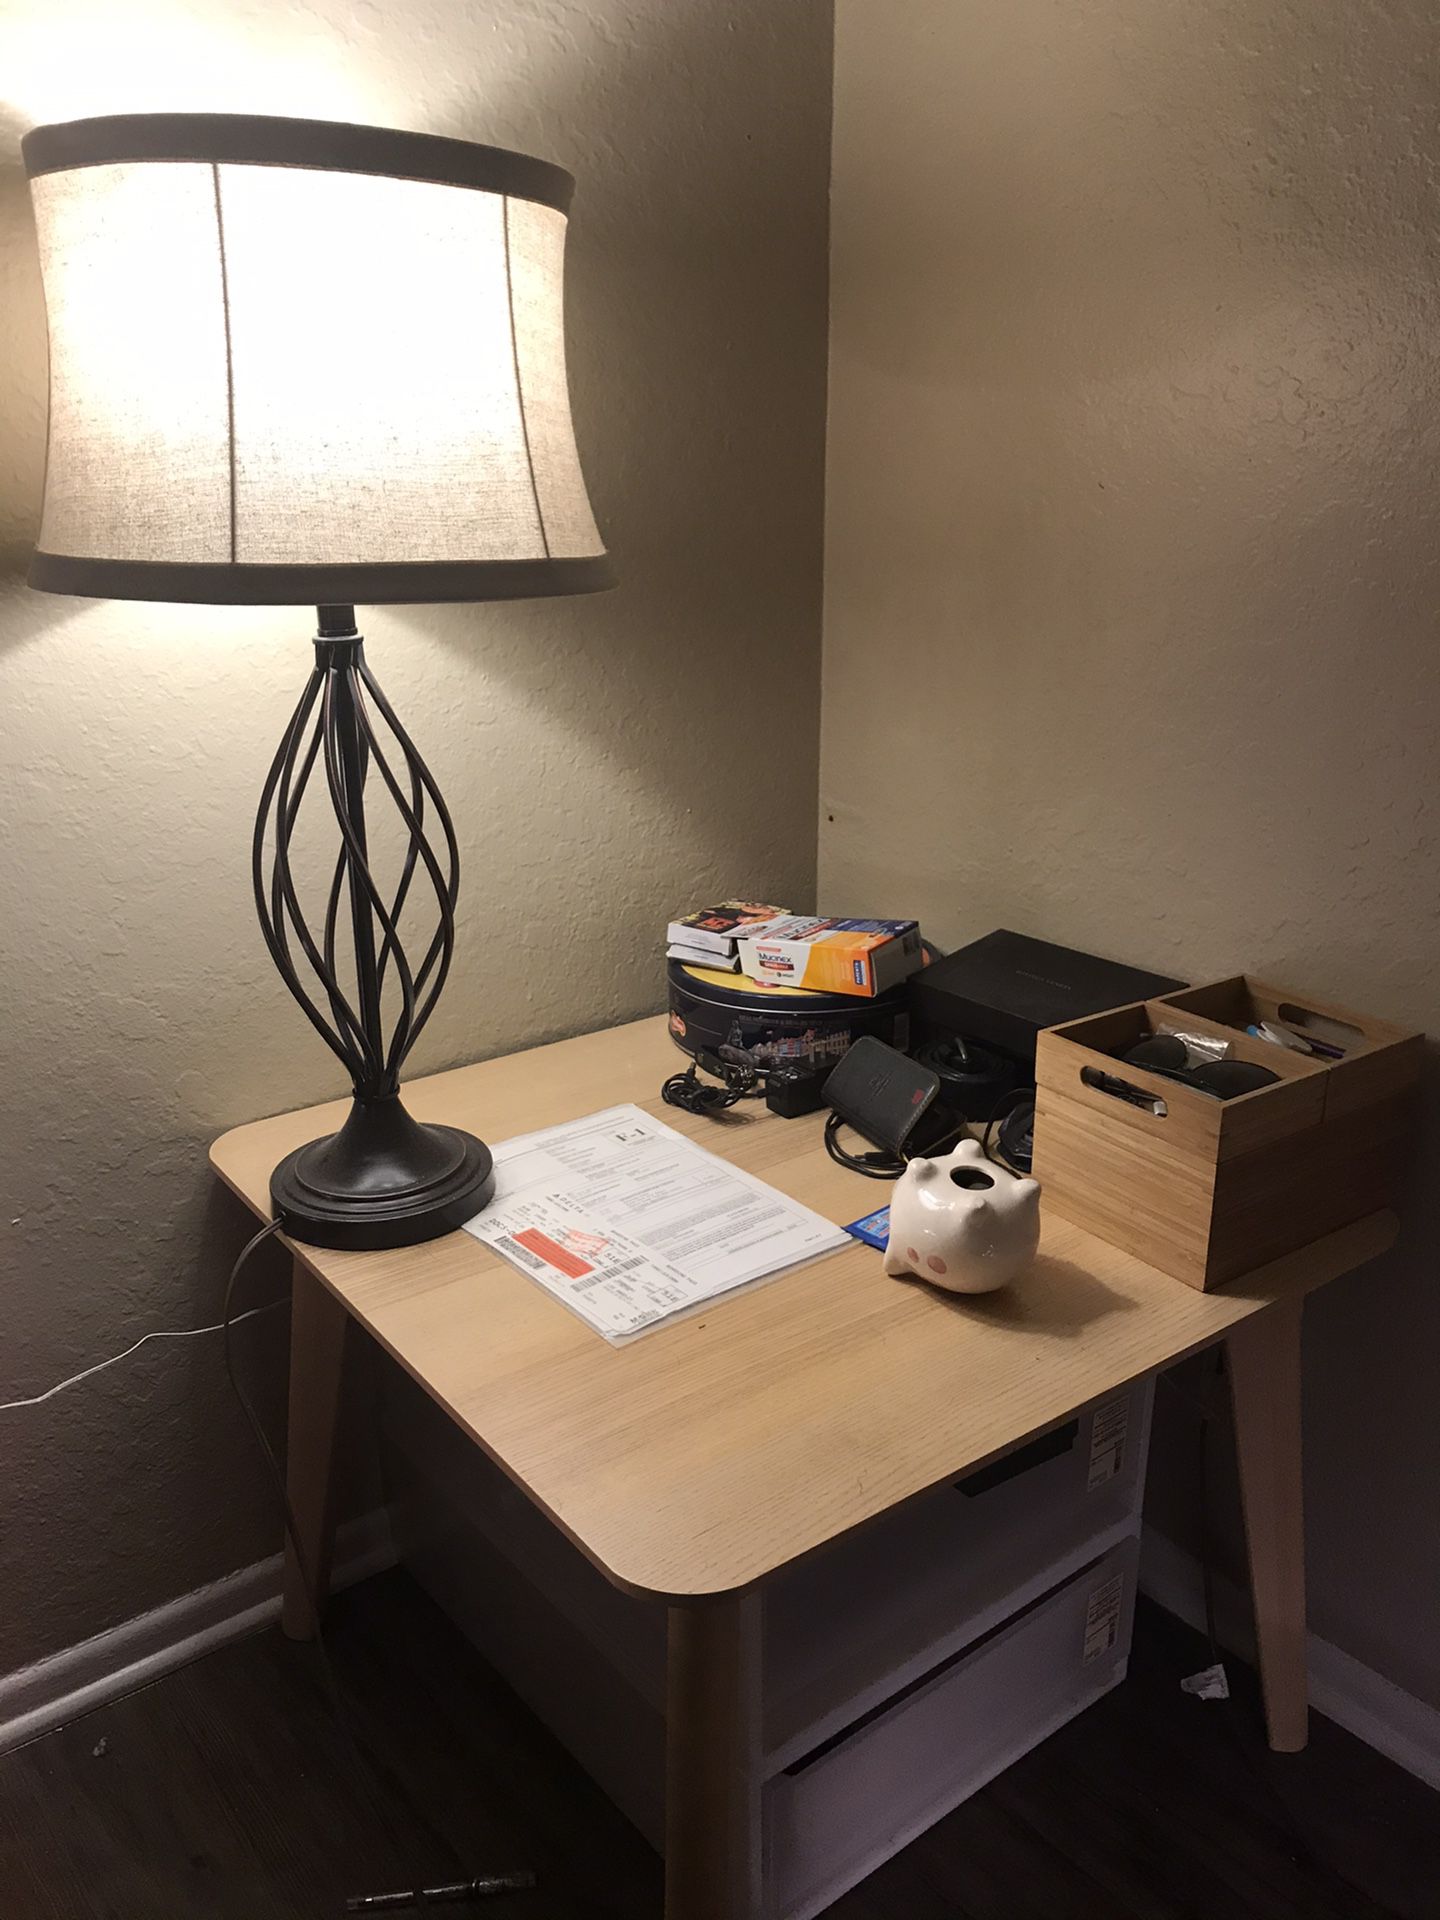 The small desk